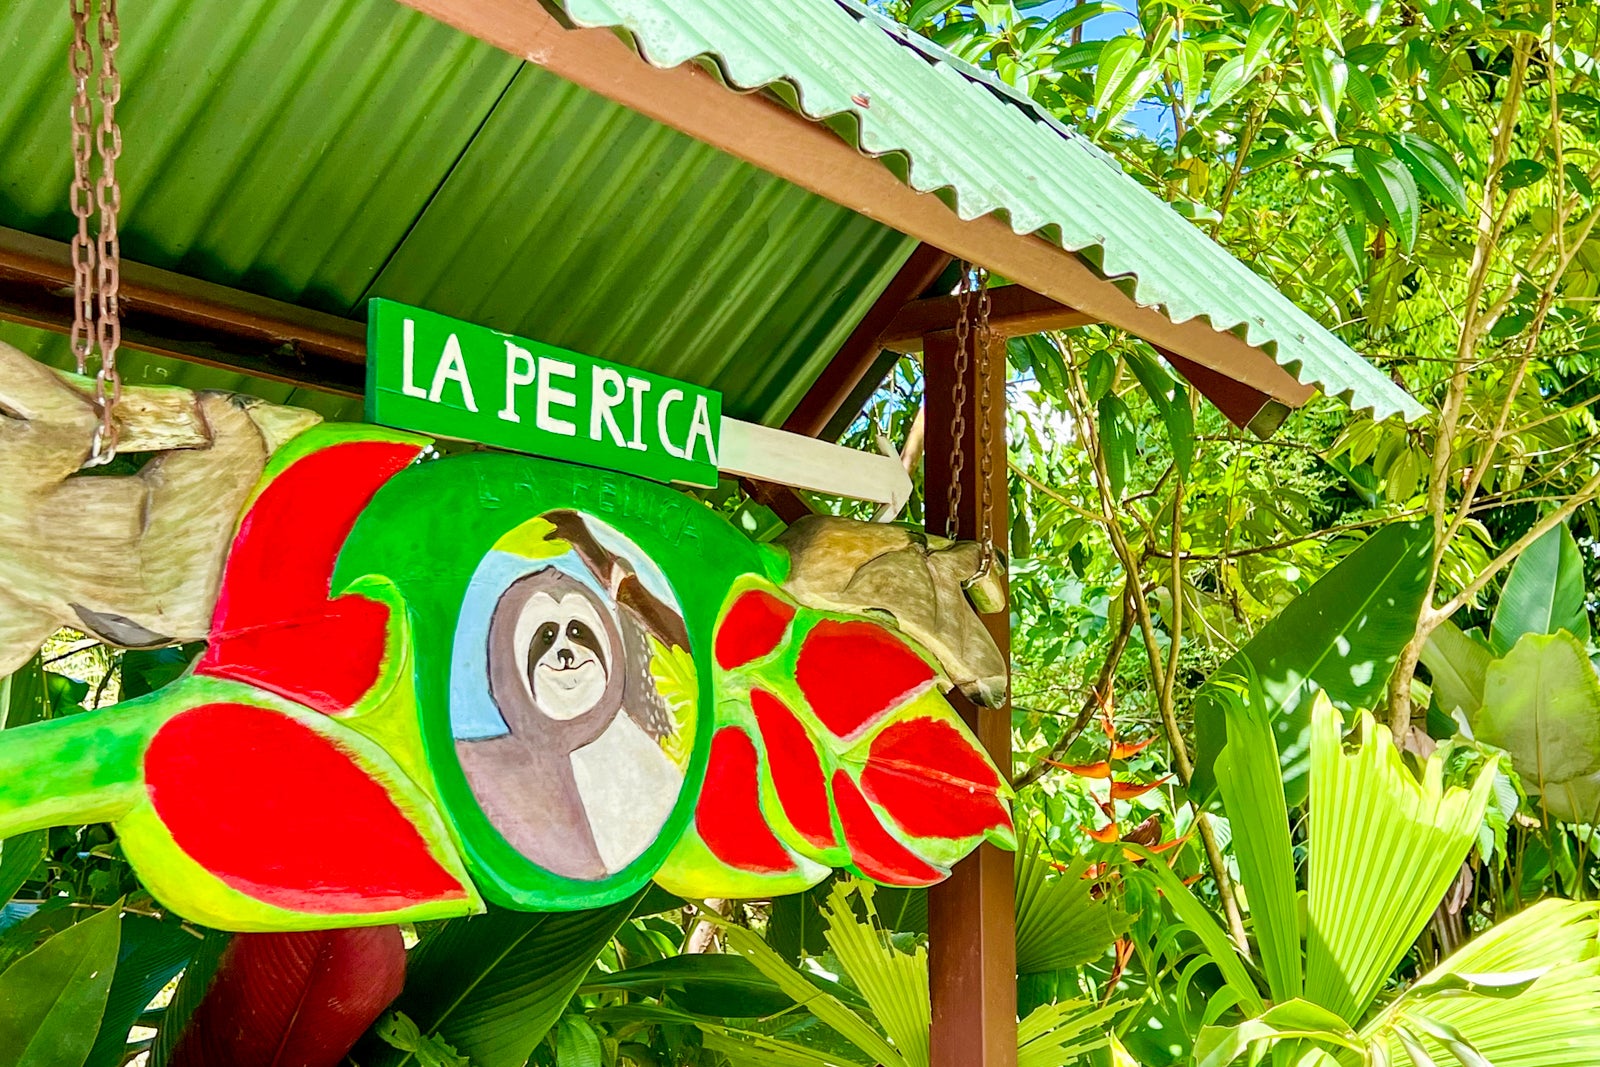 La Perica Sloth Garden sign